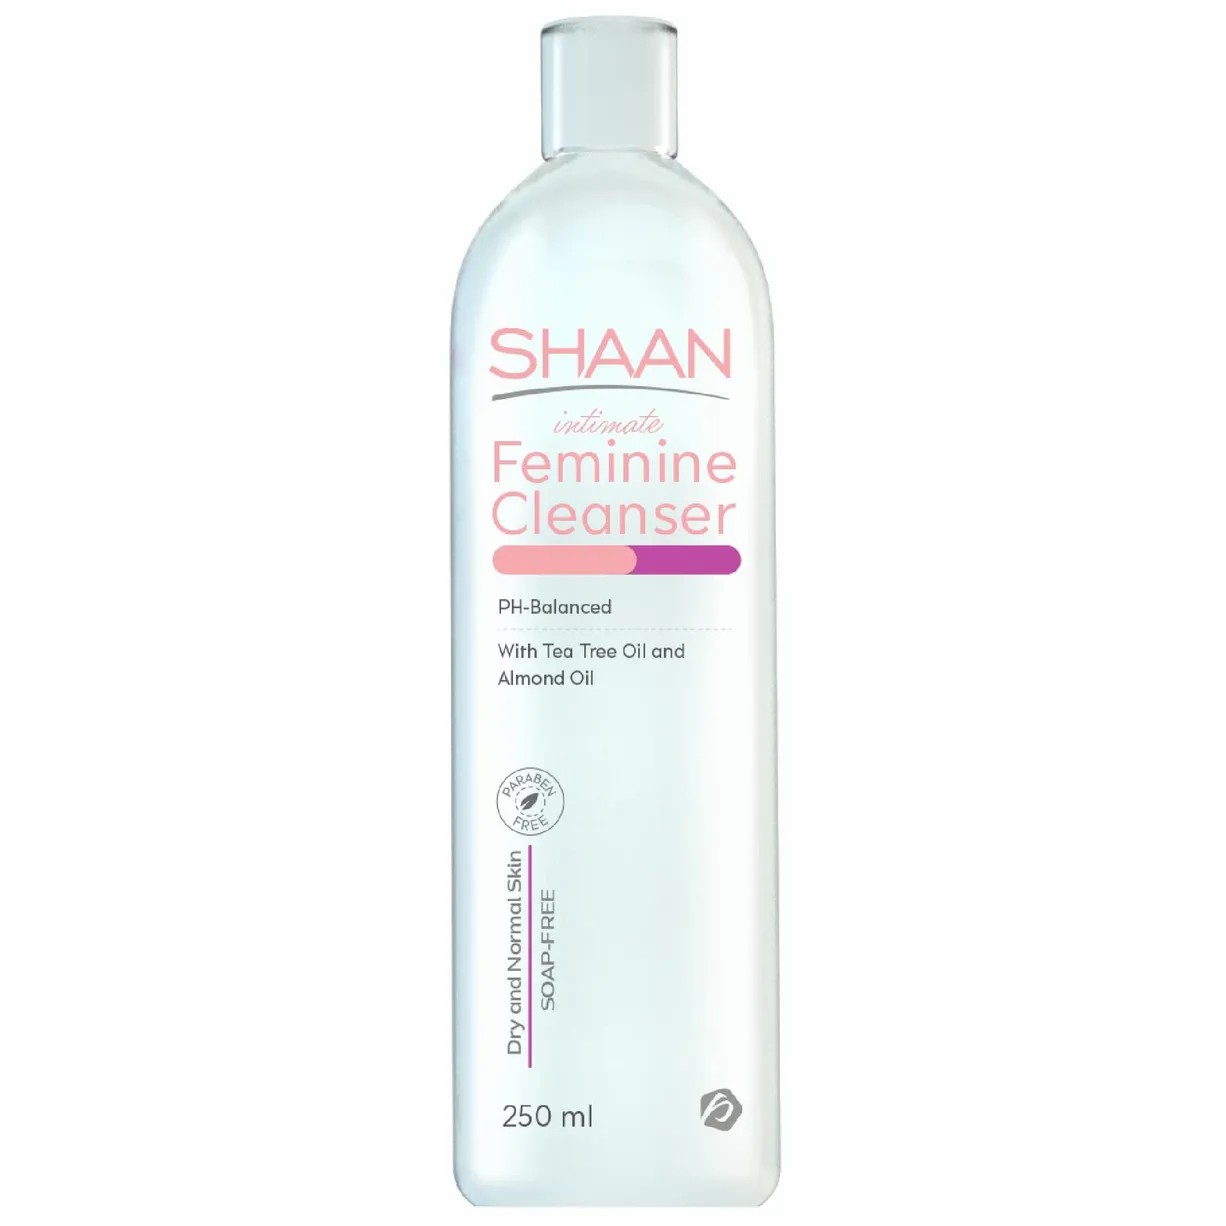 shaan feminine cleanser 250 ml